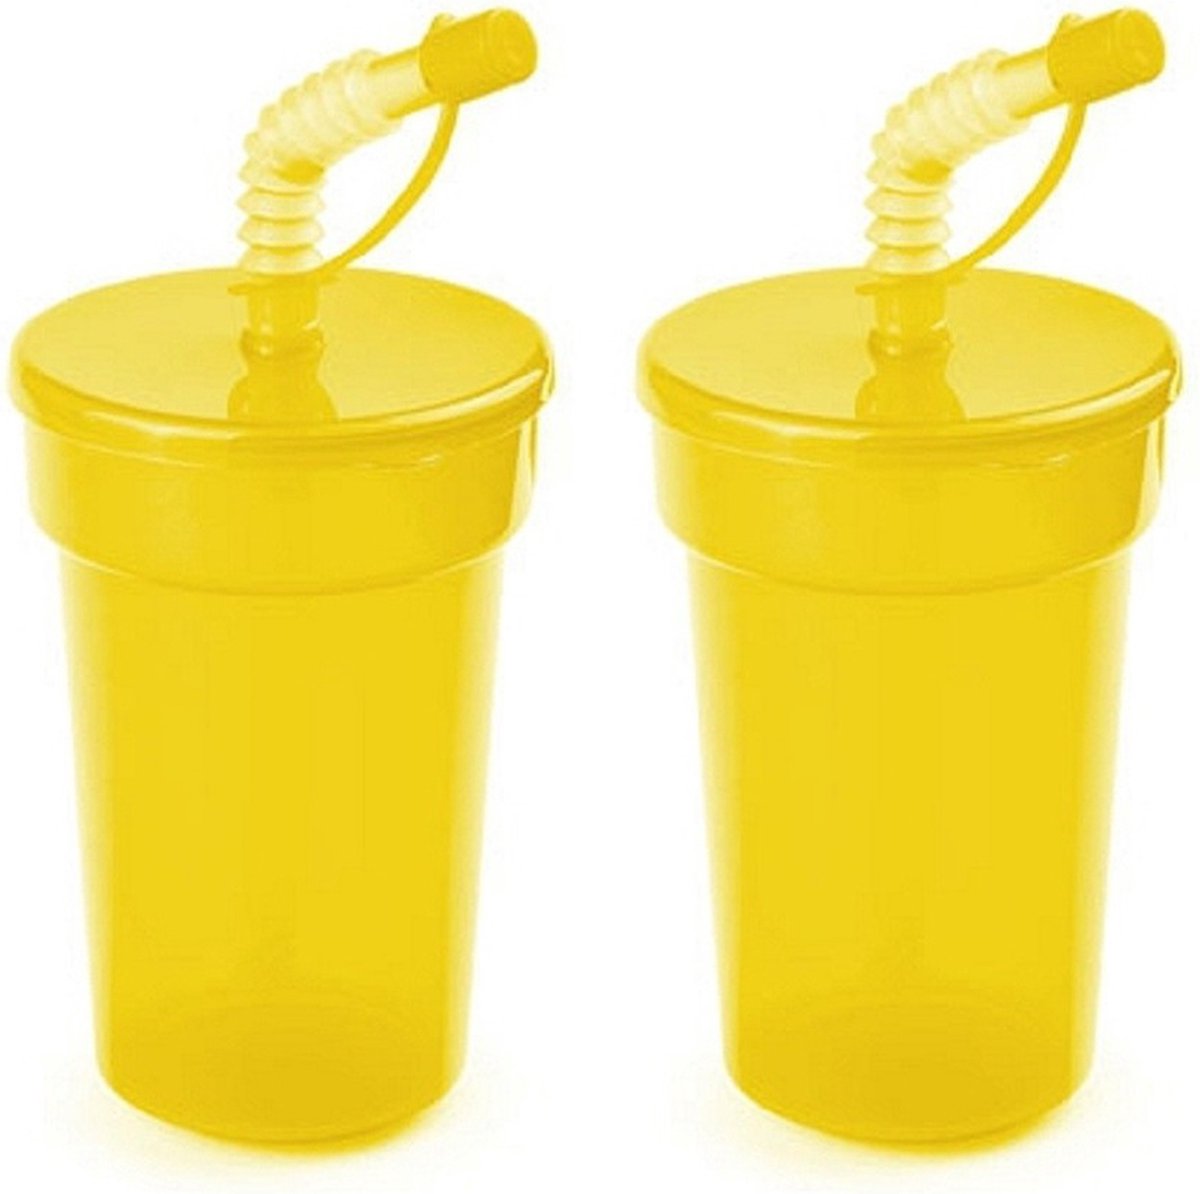 Set van 12x stuks afsluitbare plastic drinkbeker geel 400 ml met rietje voor kinderen/peuters